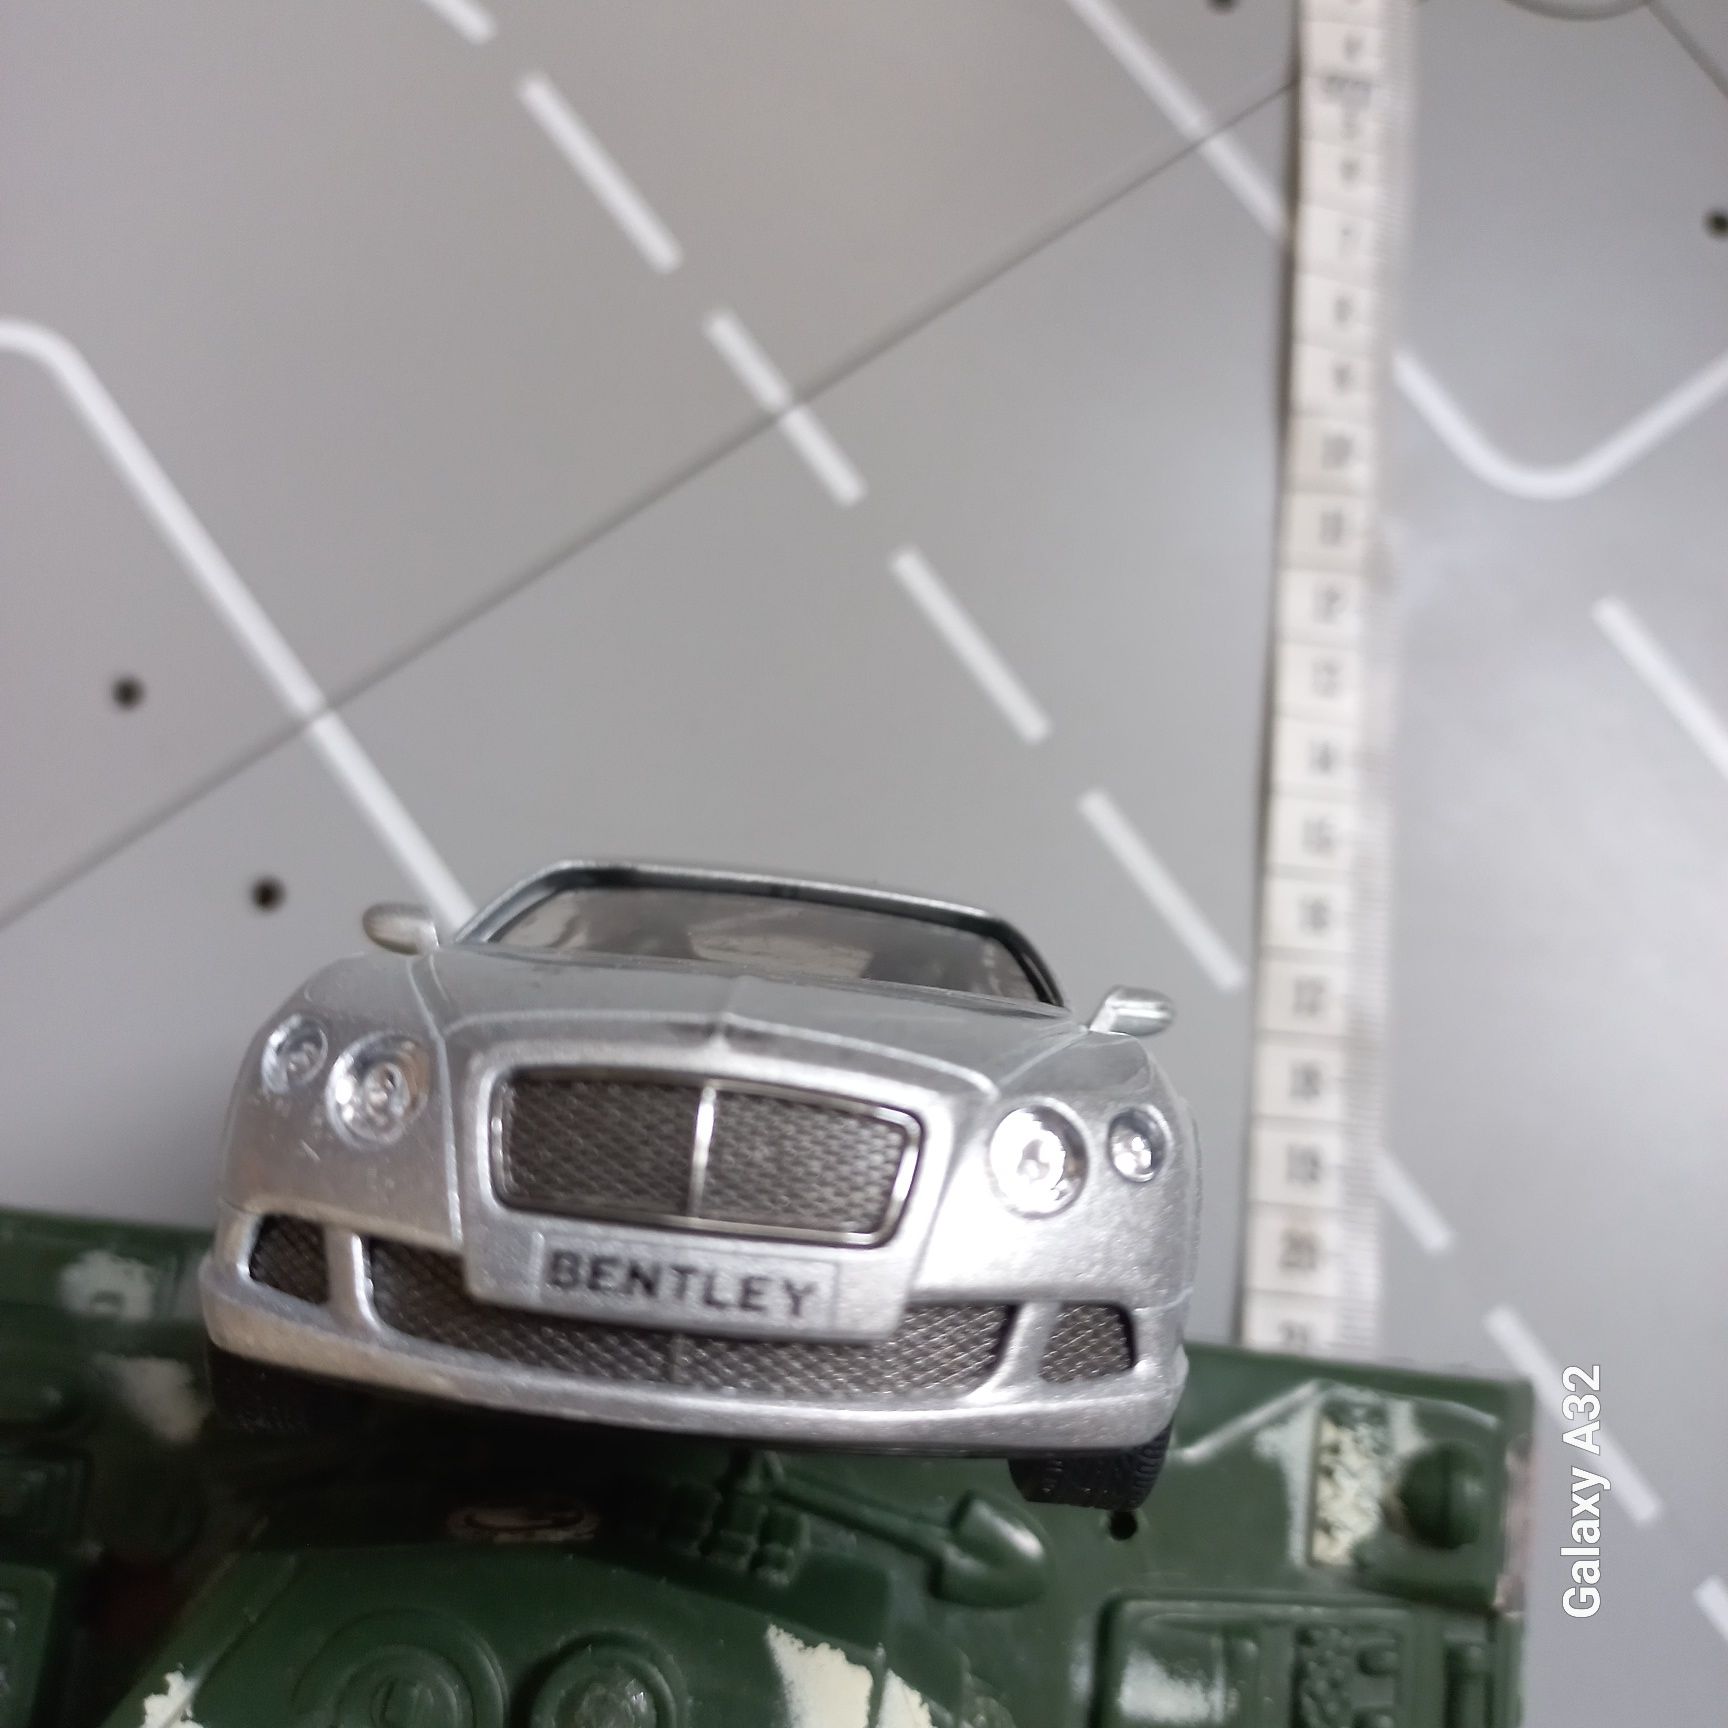 KINSMART Bentley 2012 gt sped skala 1: 38